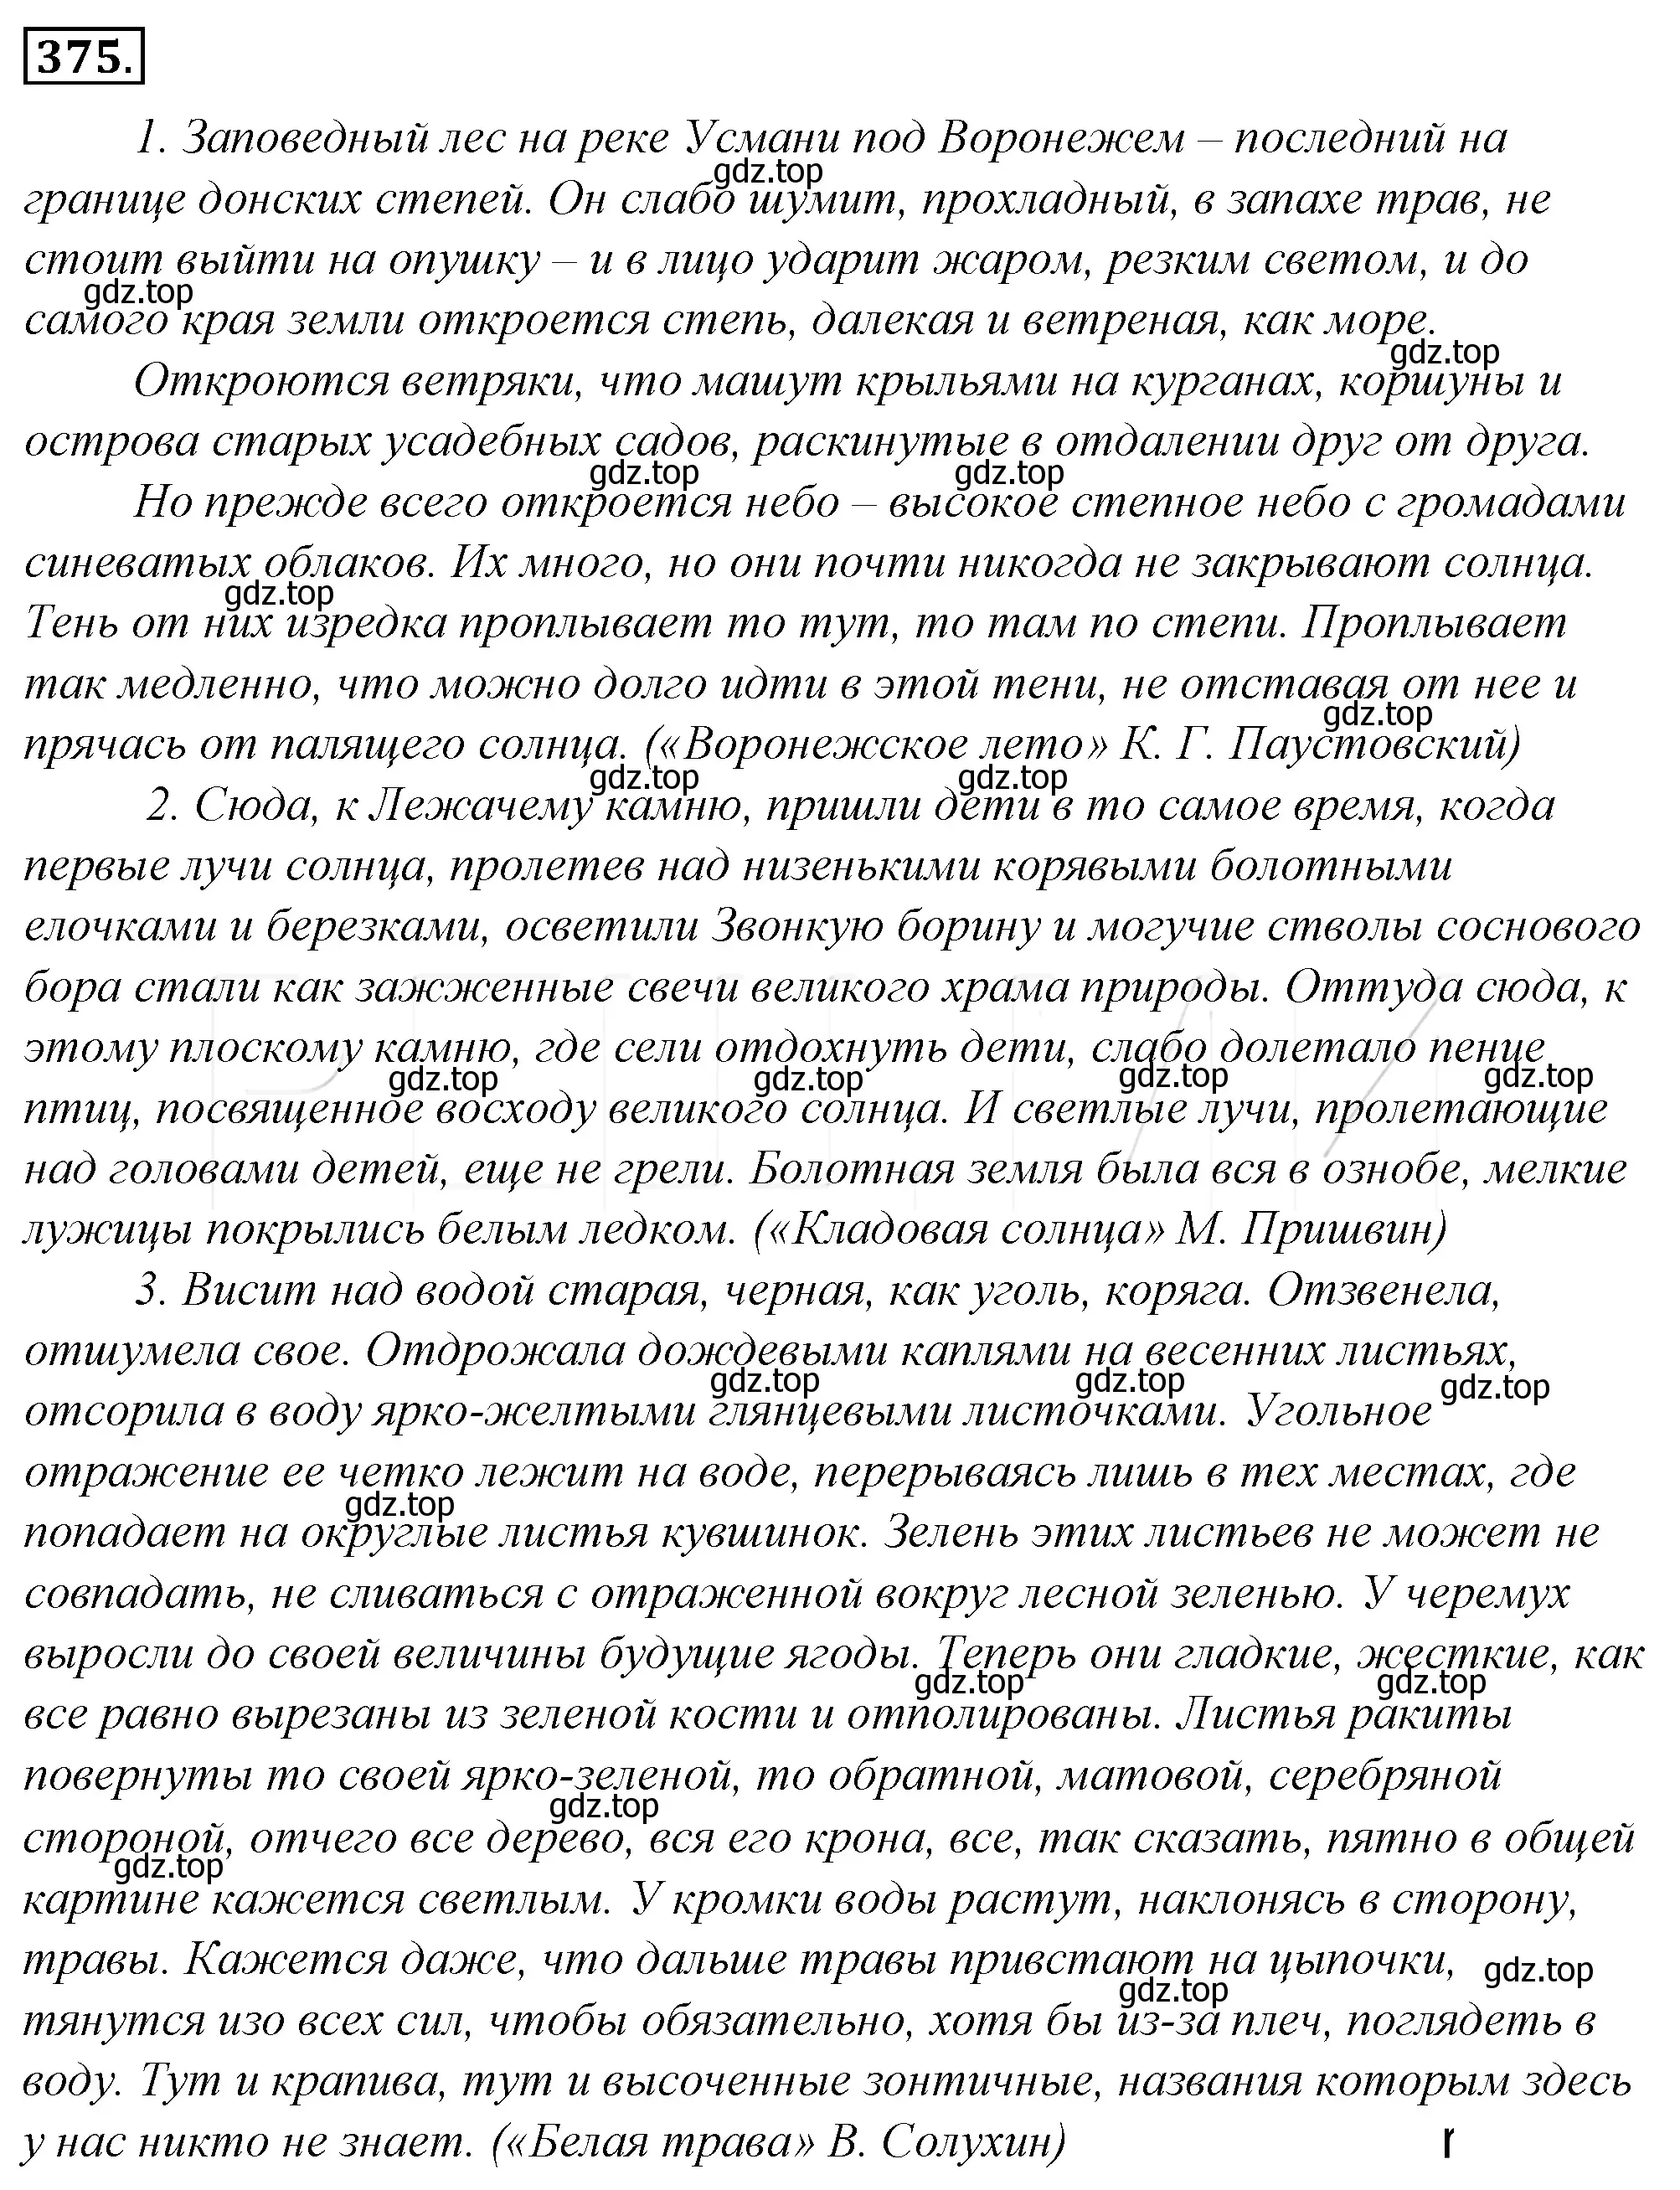 Решение 4. номер 40 (страница 51) гдз по русскому языку 10-11 класс Гольцова, Шамшин, учебник 2 часть